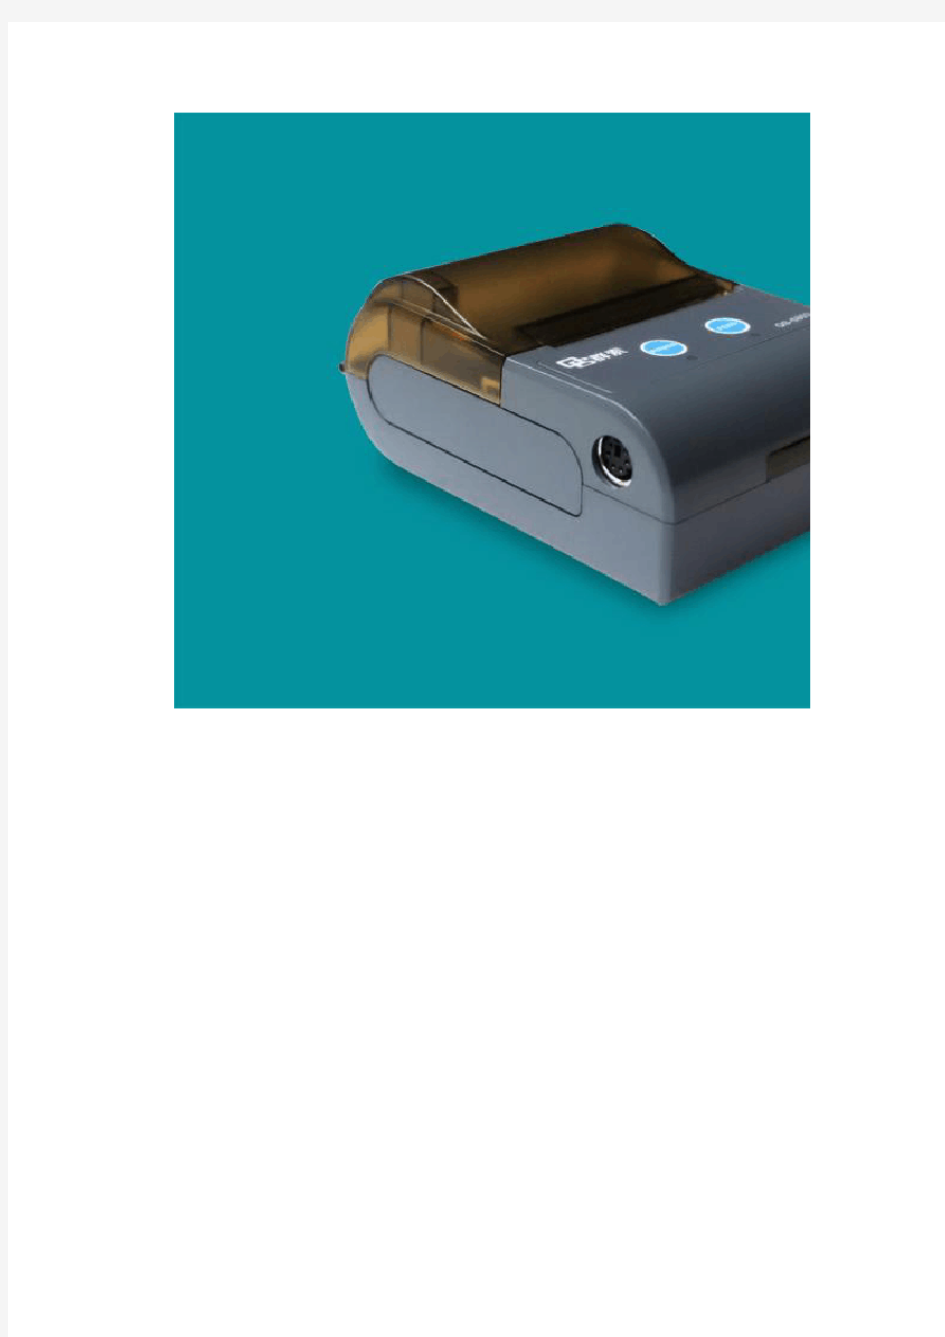 智讯会员管理设备58mm热敏便携打印机